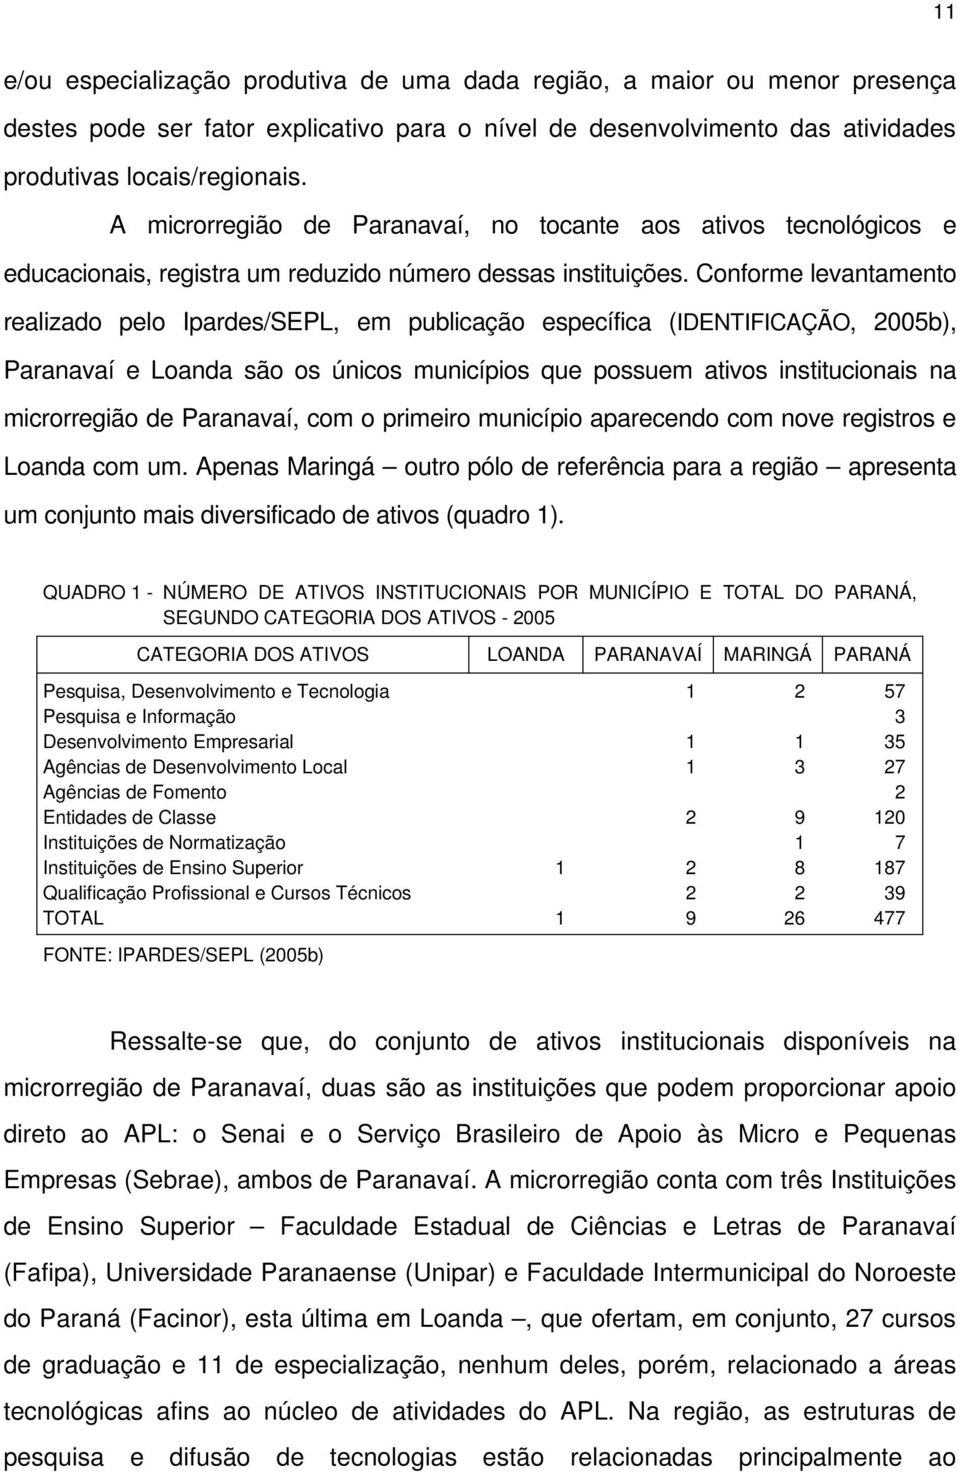 Conforme levantamento realizado pelo Ipardes/SEPL, em publicação específica (IDENTIFICAÇÃO, 2005b), Paranavaí e Loanda são os únicos municípios que possuem ativos institucionais na microrregião de